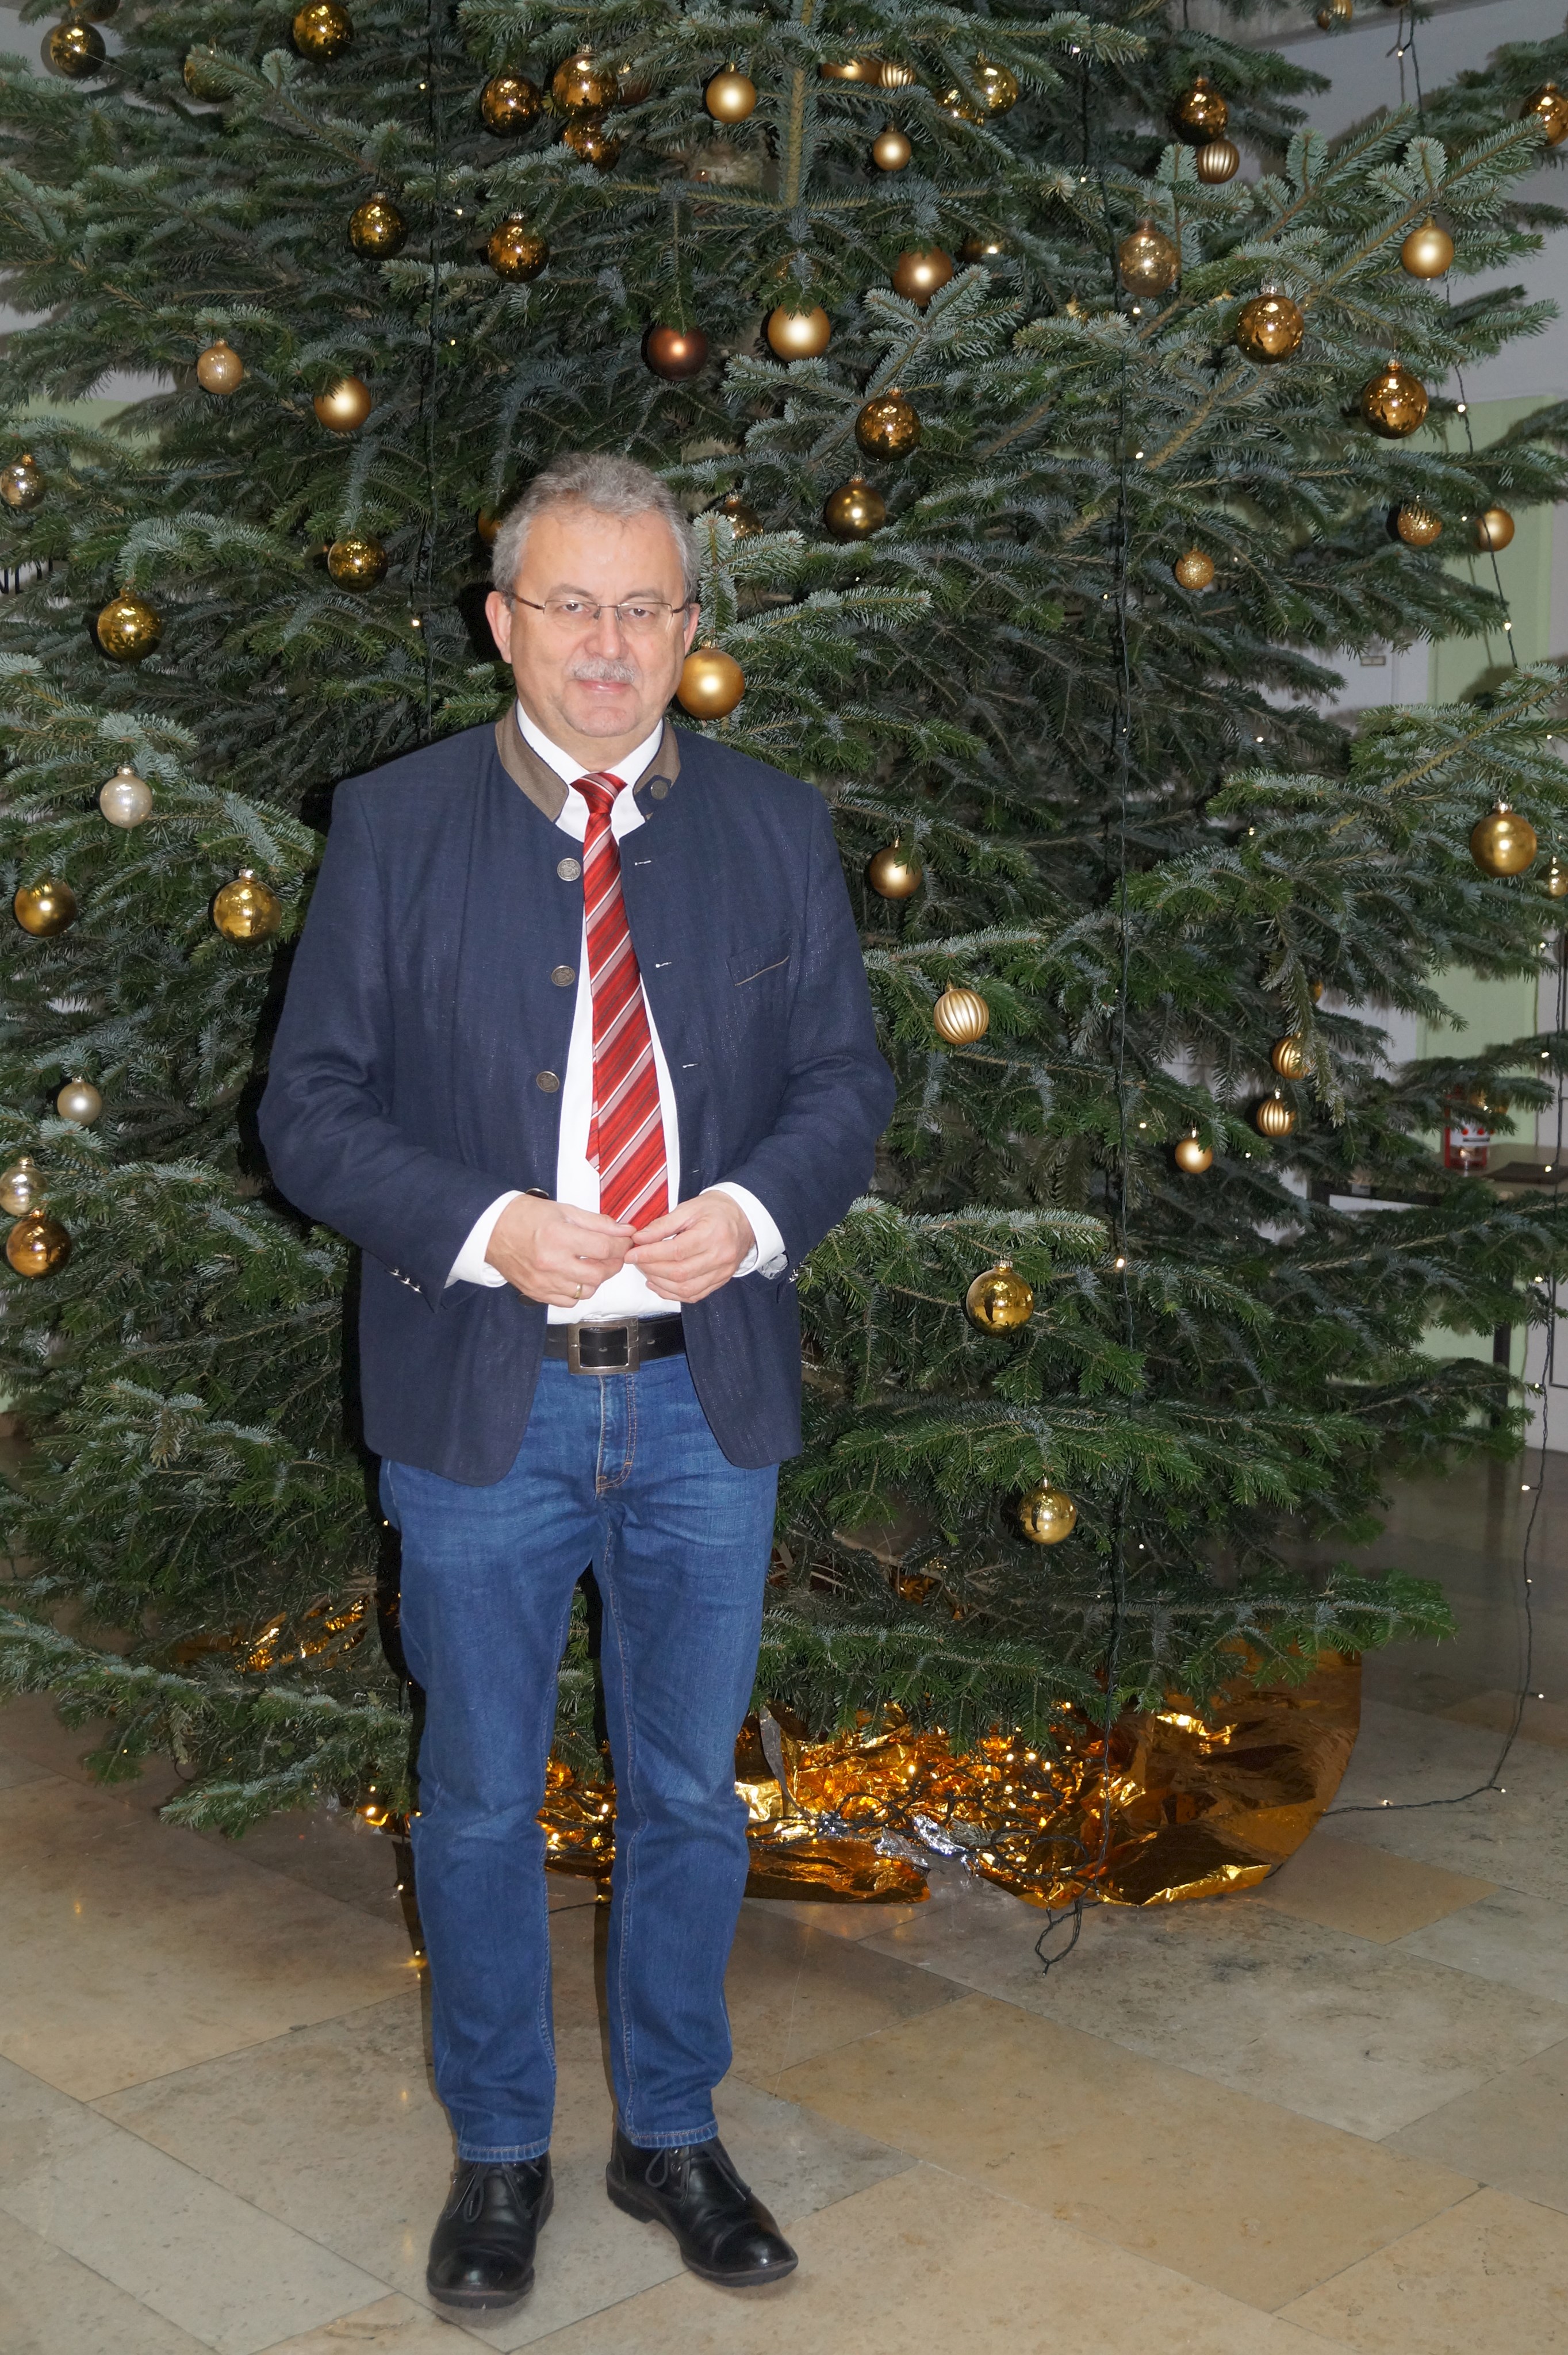 Jahresabschlussrede von Landrat Josef Laumer in der letzten Sitzung des Kreistages des Landkreises Straubing-Bogen im Jahr 2018